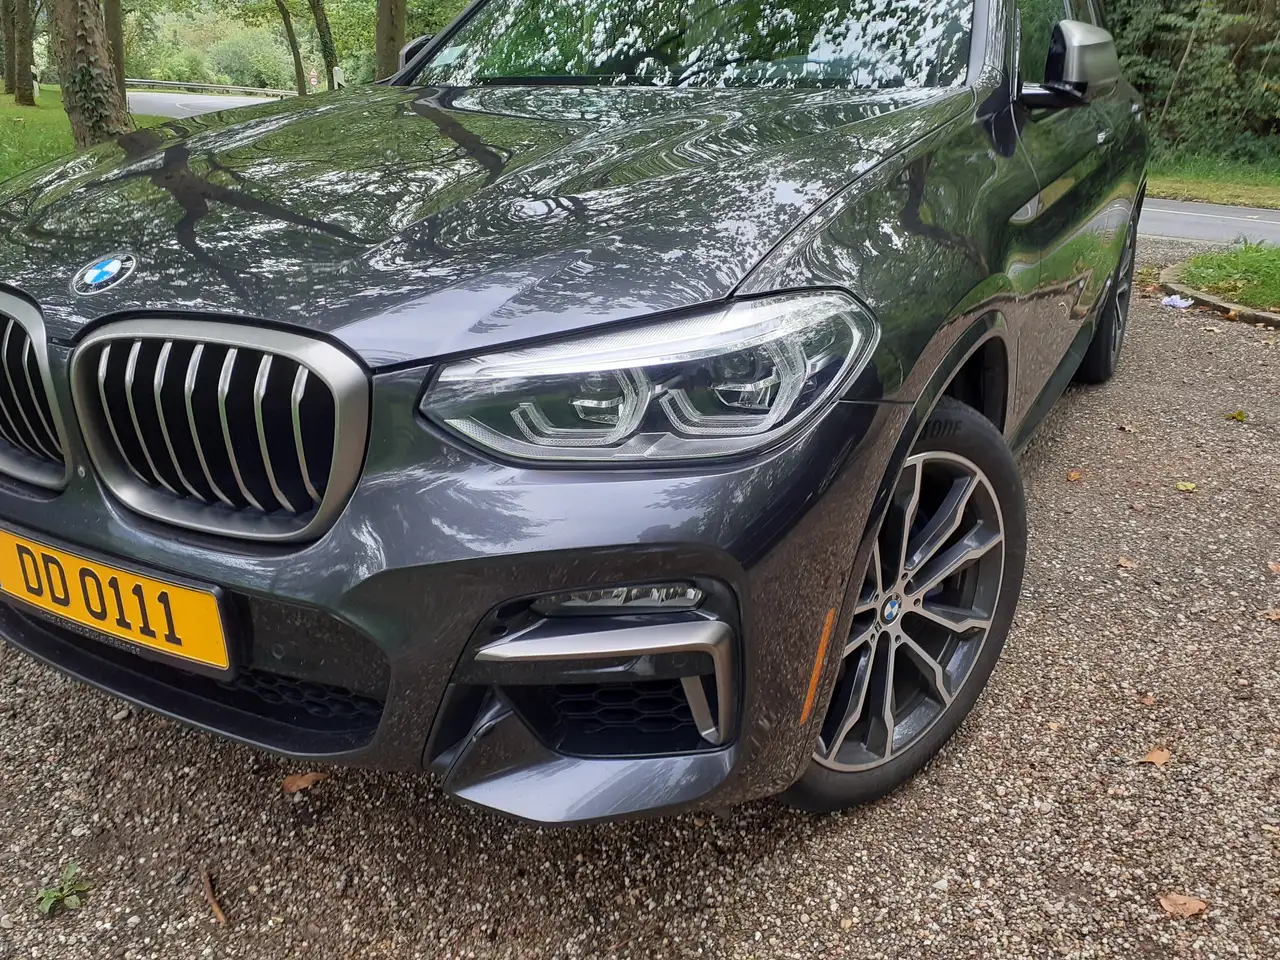 BMW X3 SUV/4x4/Pick-up in Zwart tweedehands in petange voor € 45.000,-